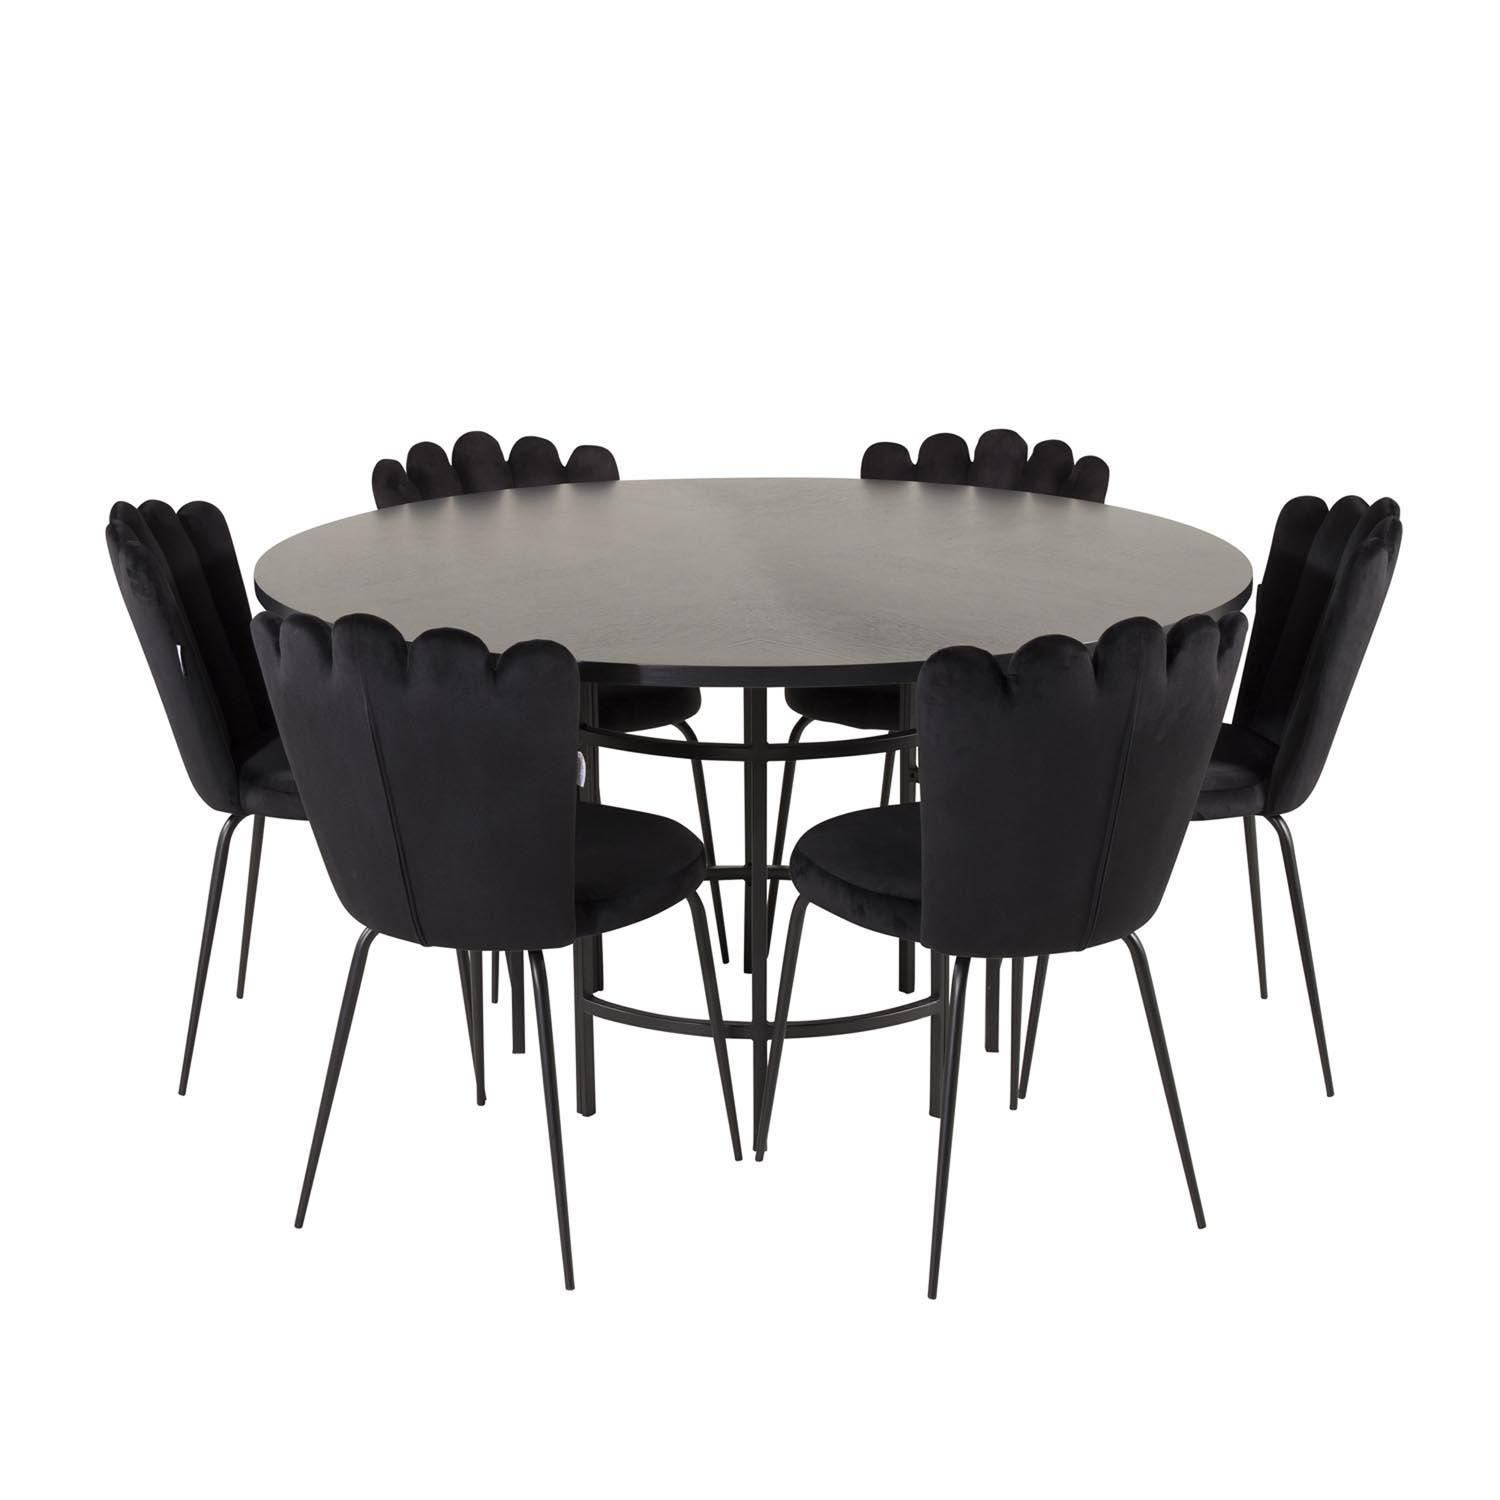 VENTURE DESIGN Copenhagen spisebordssæt, m. 4 stole - sort finer/sort metal og sort fløjl/sort metal